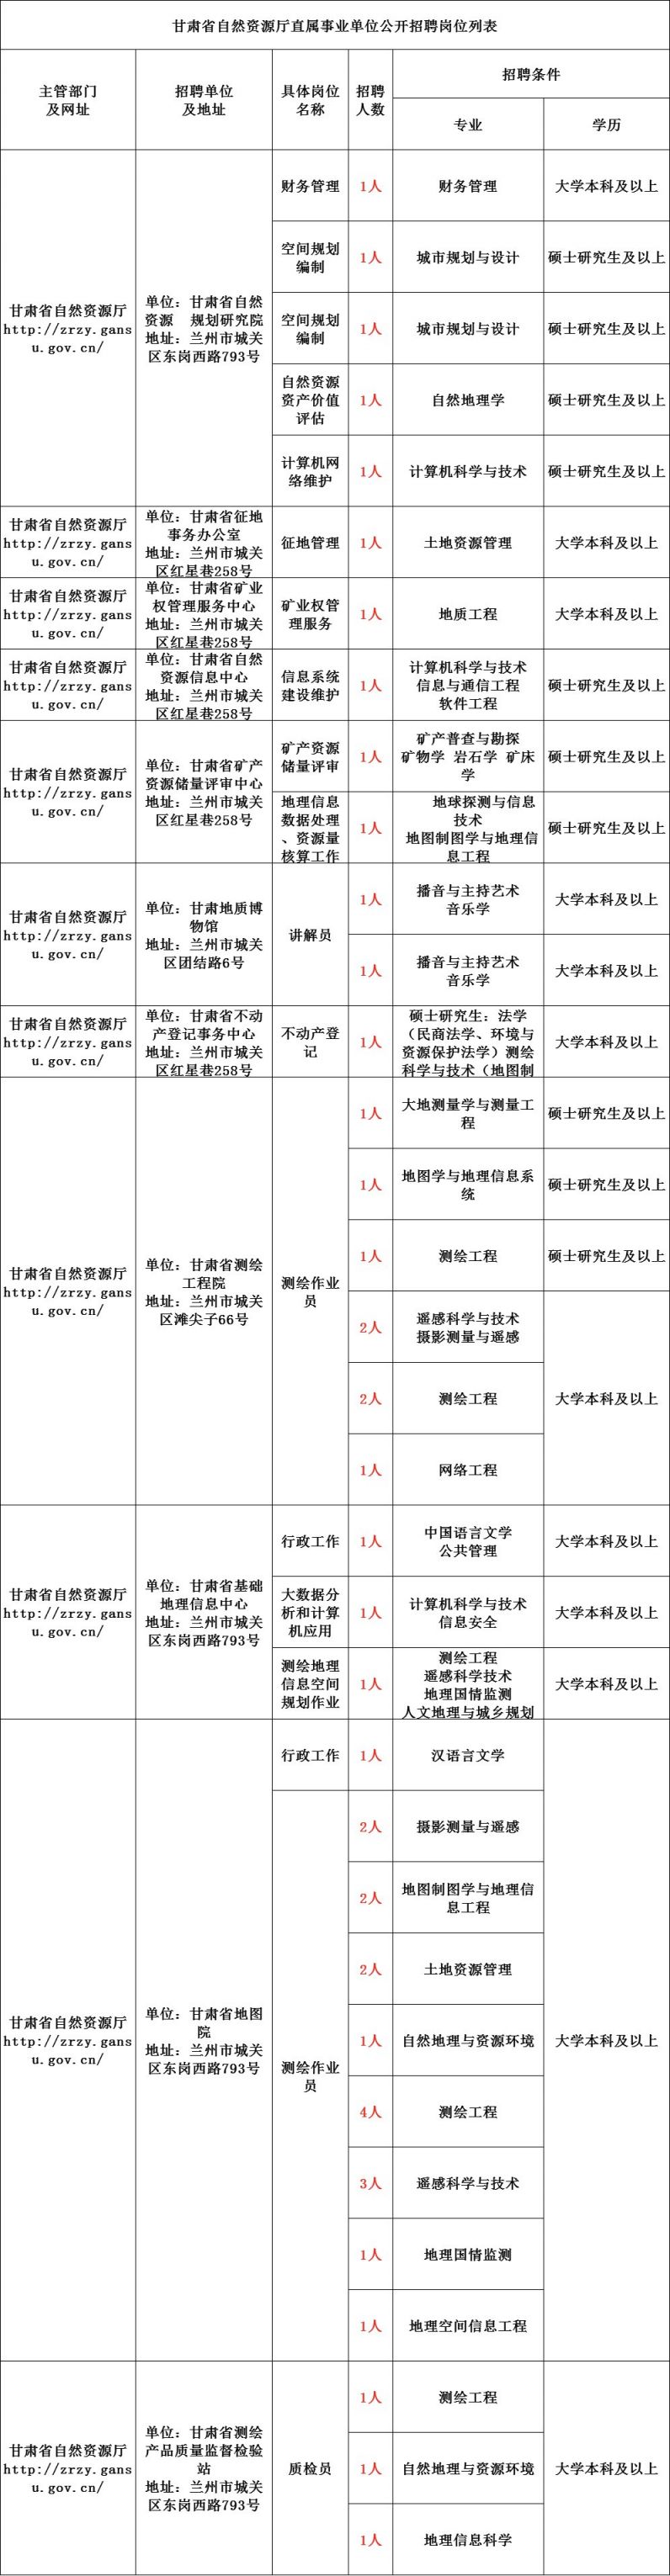 2021甘肃省自然资源厅直属事业单位招聘公告